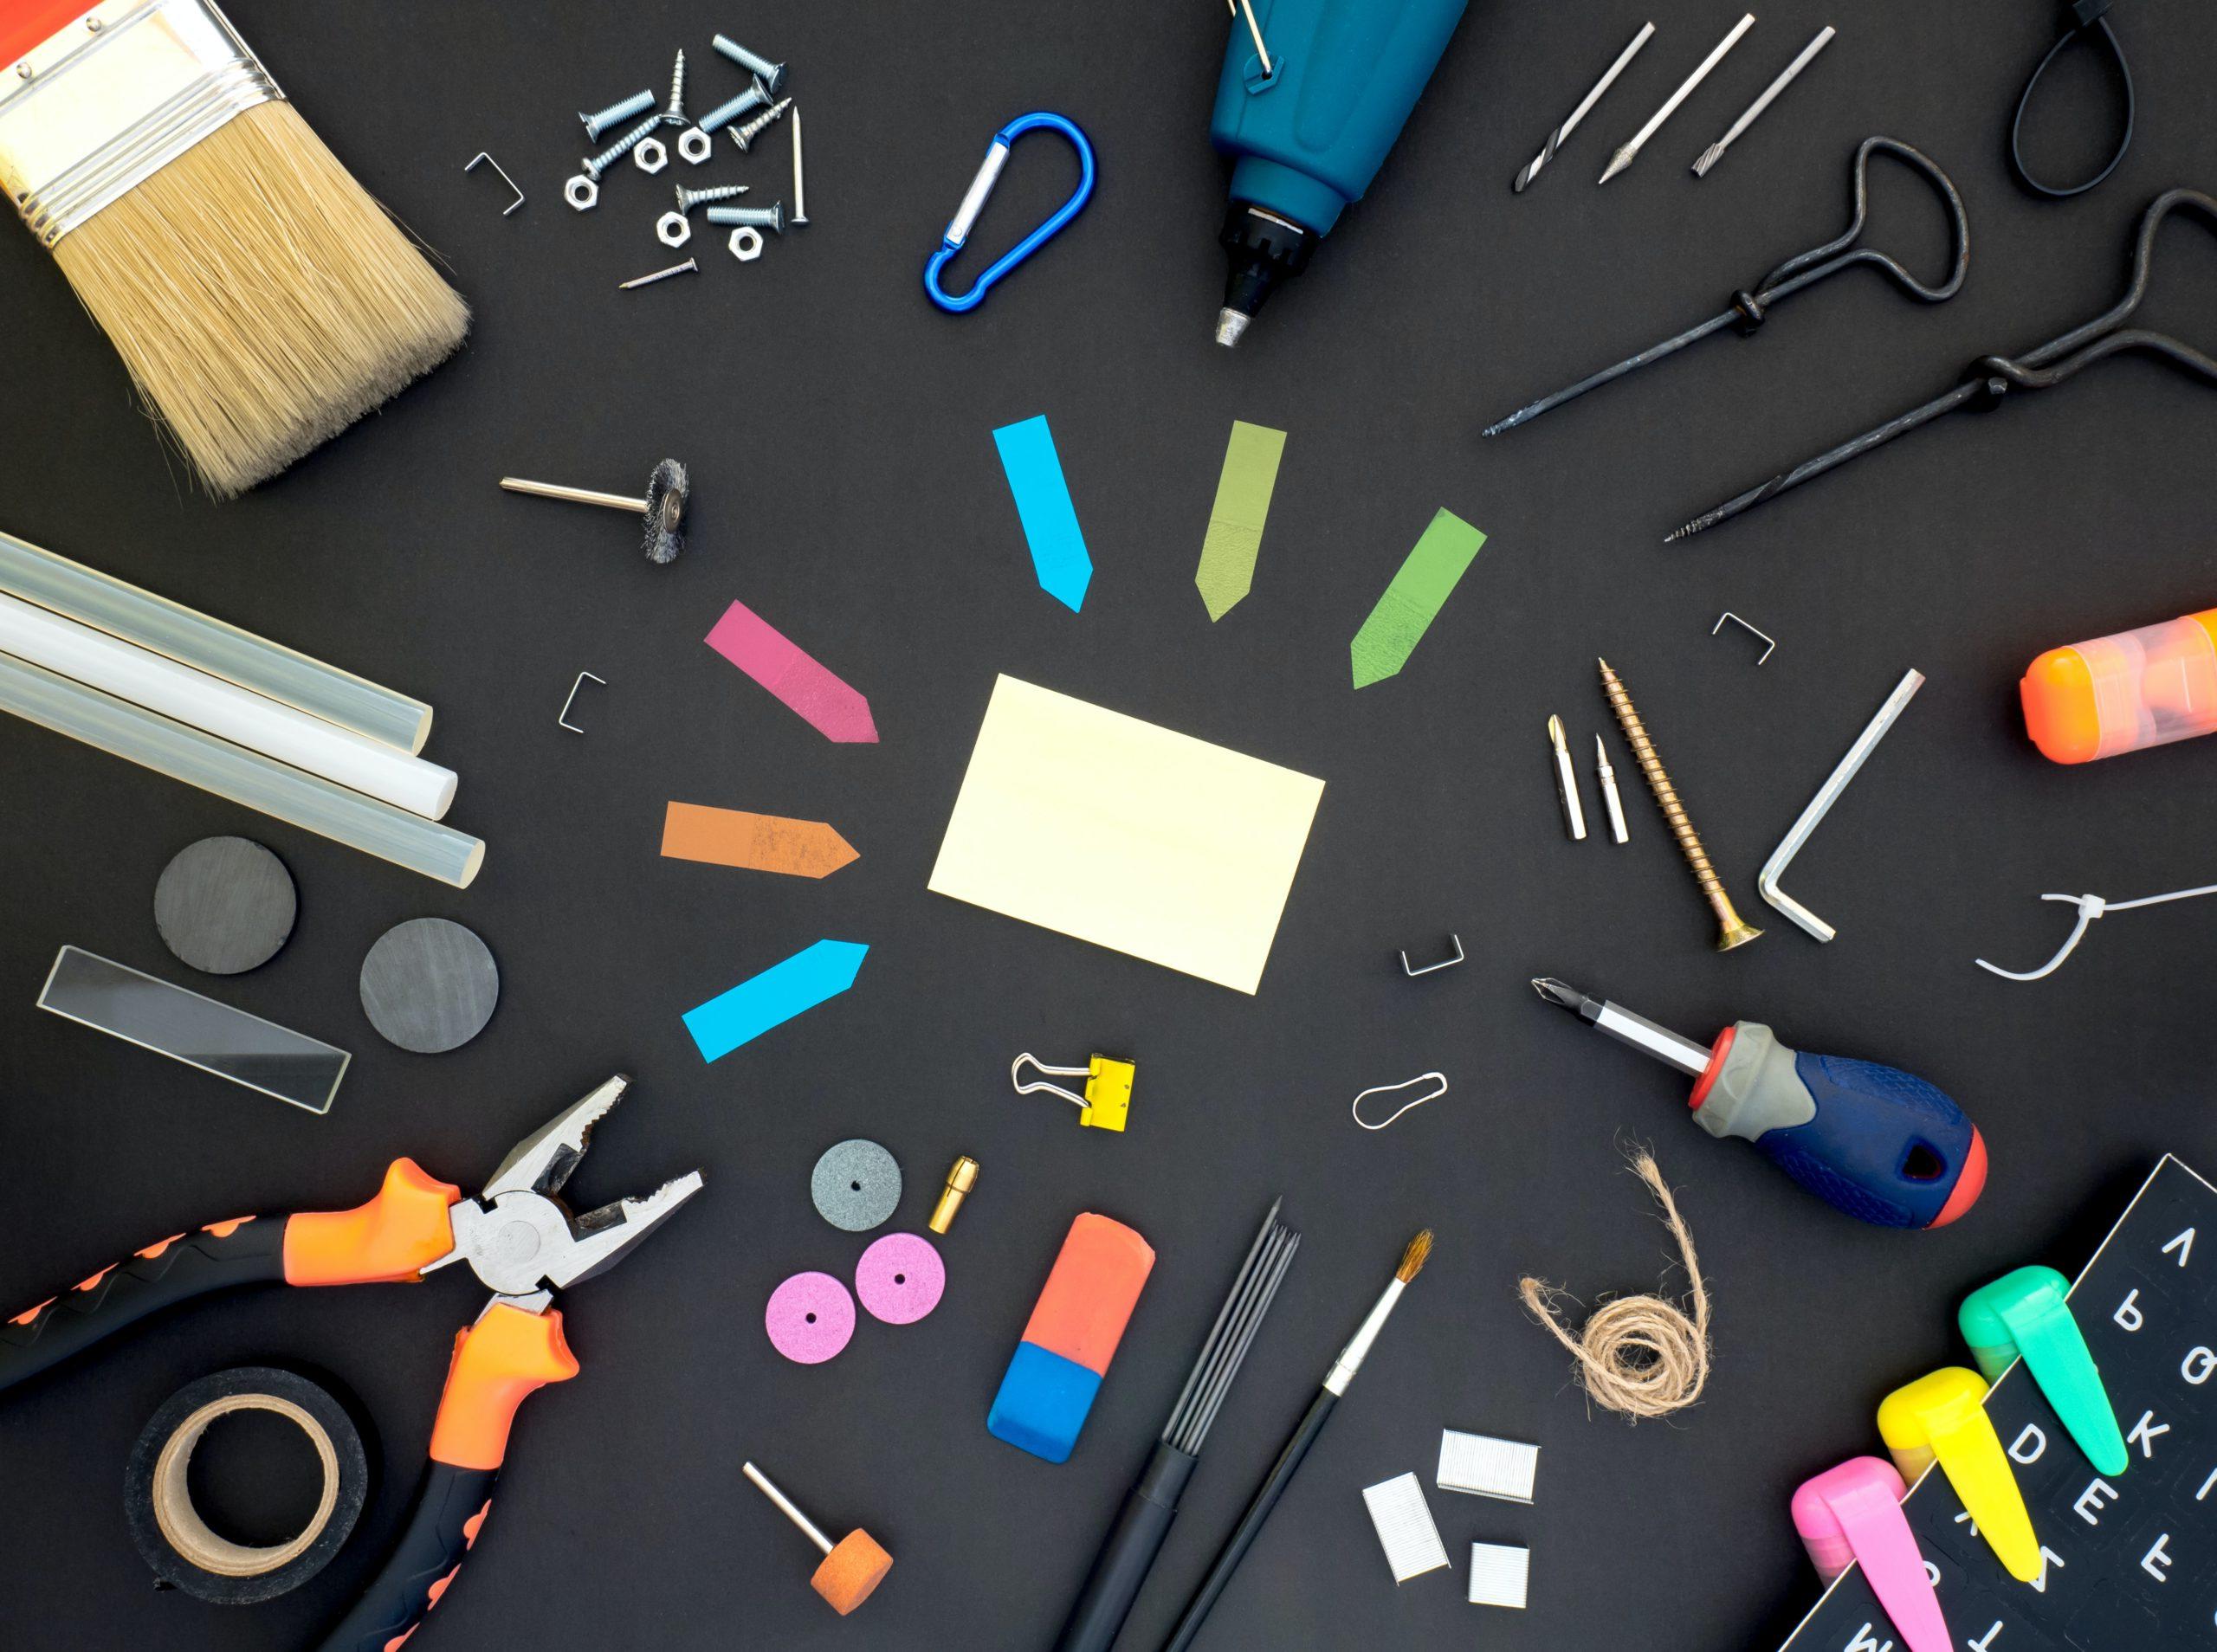 各种各样的工具放在黑色的表面上，包括便利贴, 螺丝刀, 扳手, 磁带, 画笔, 笔用, 胶棒, 斯台普斯, 磁铁, 和回形针.